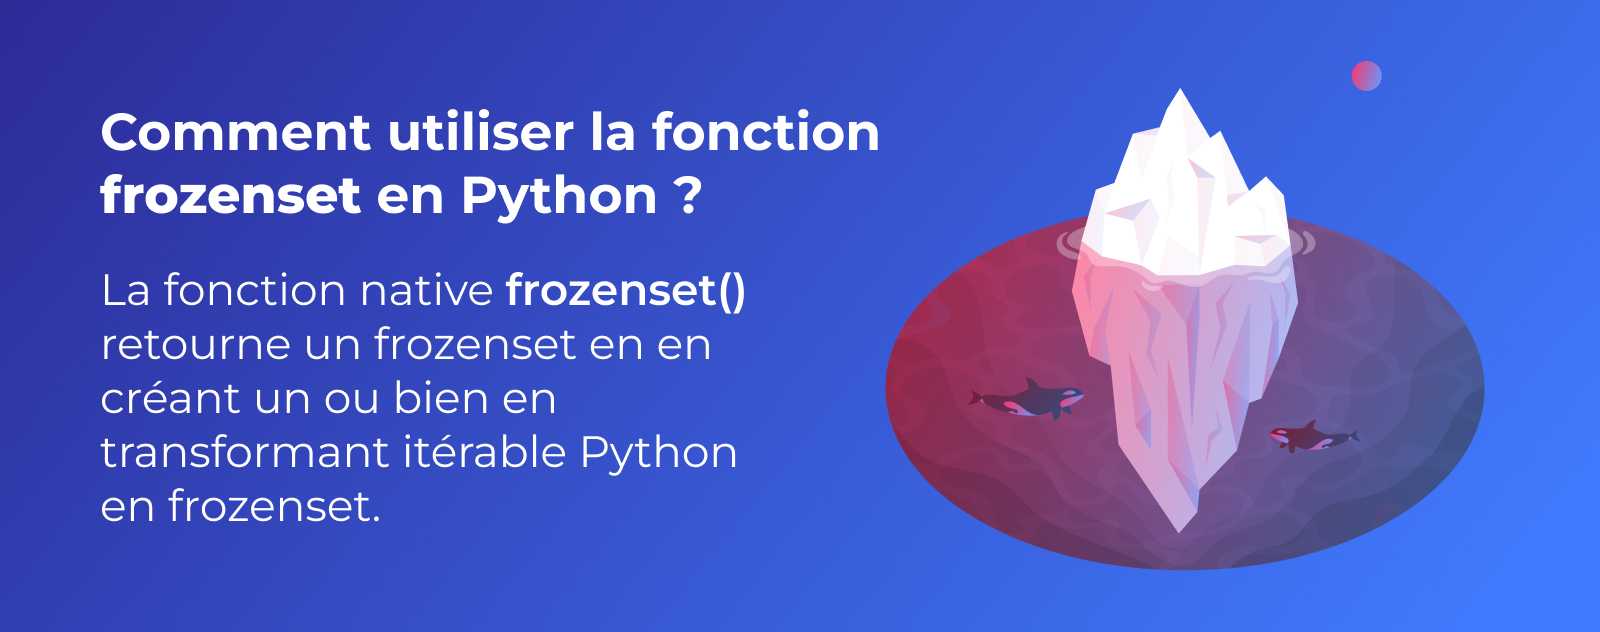 La fonction frozenset en Python